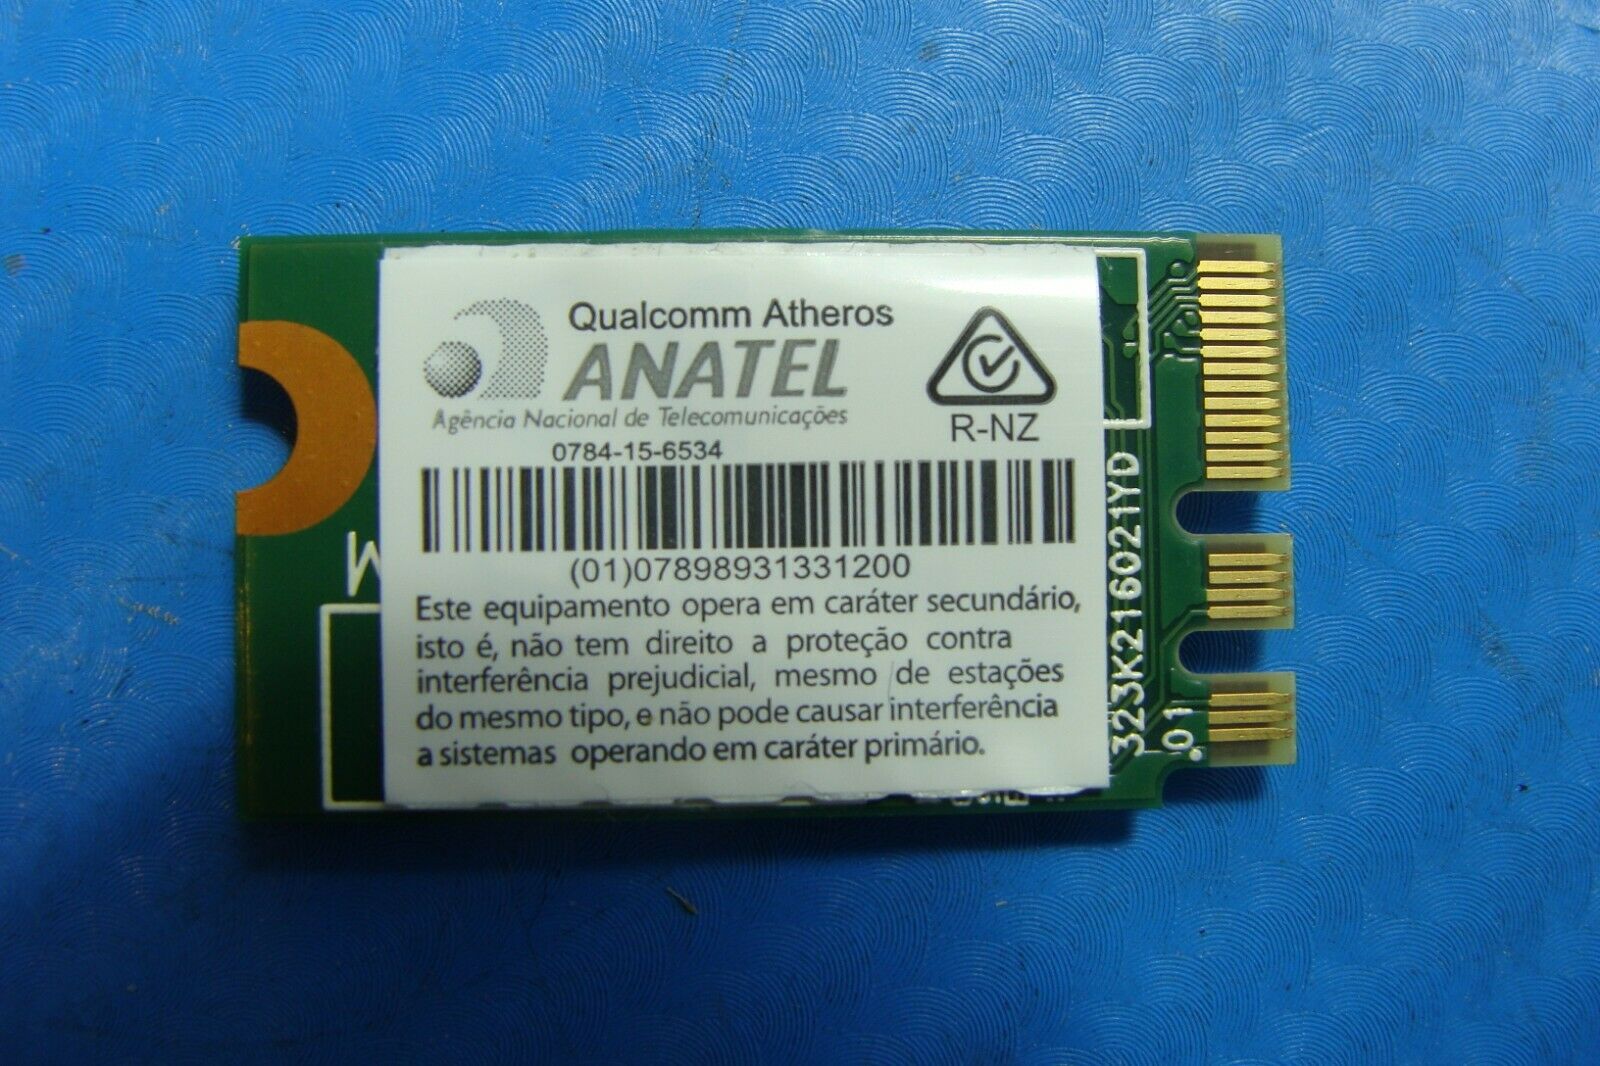 Acer Aspire 3 A315-31-C514 15.6